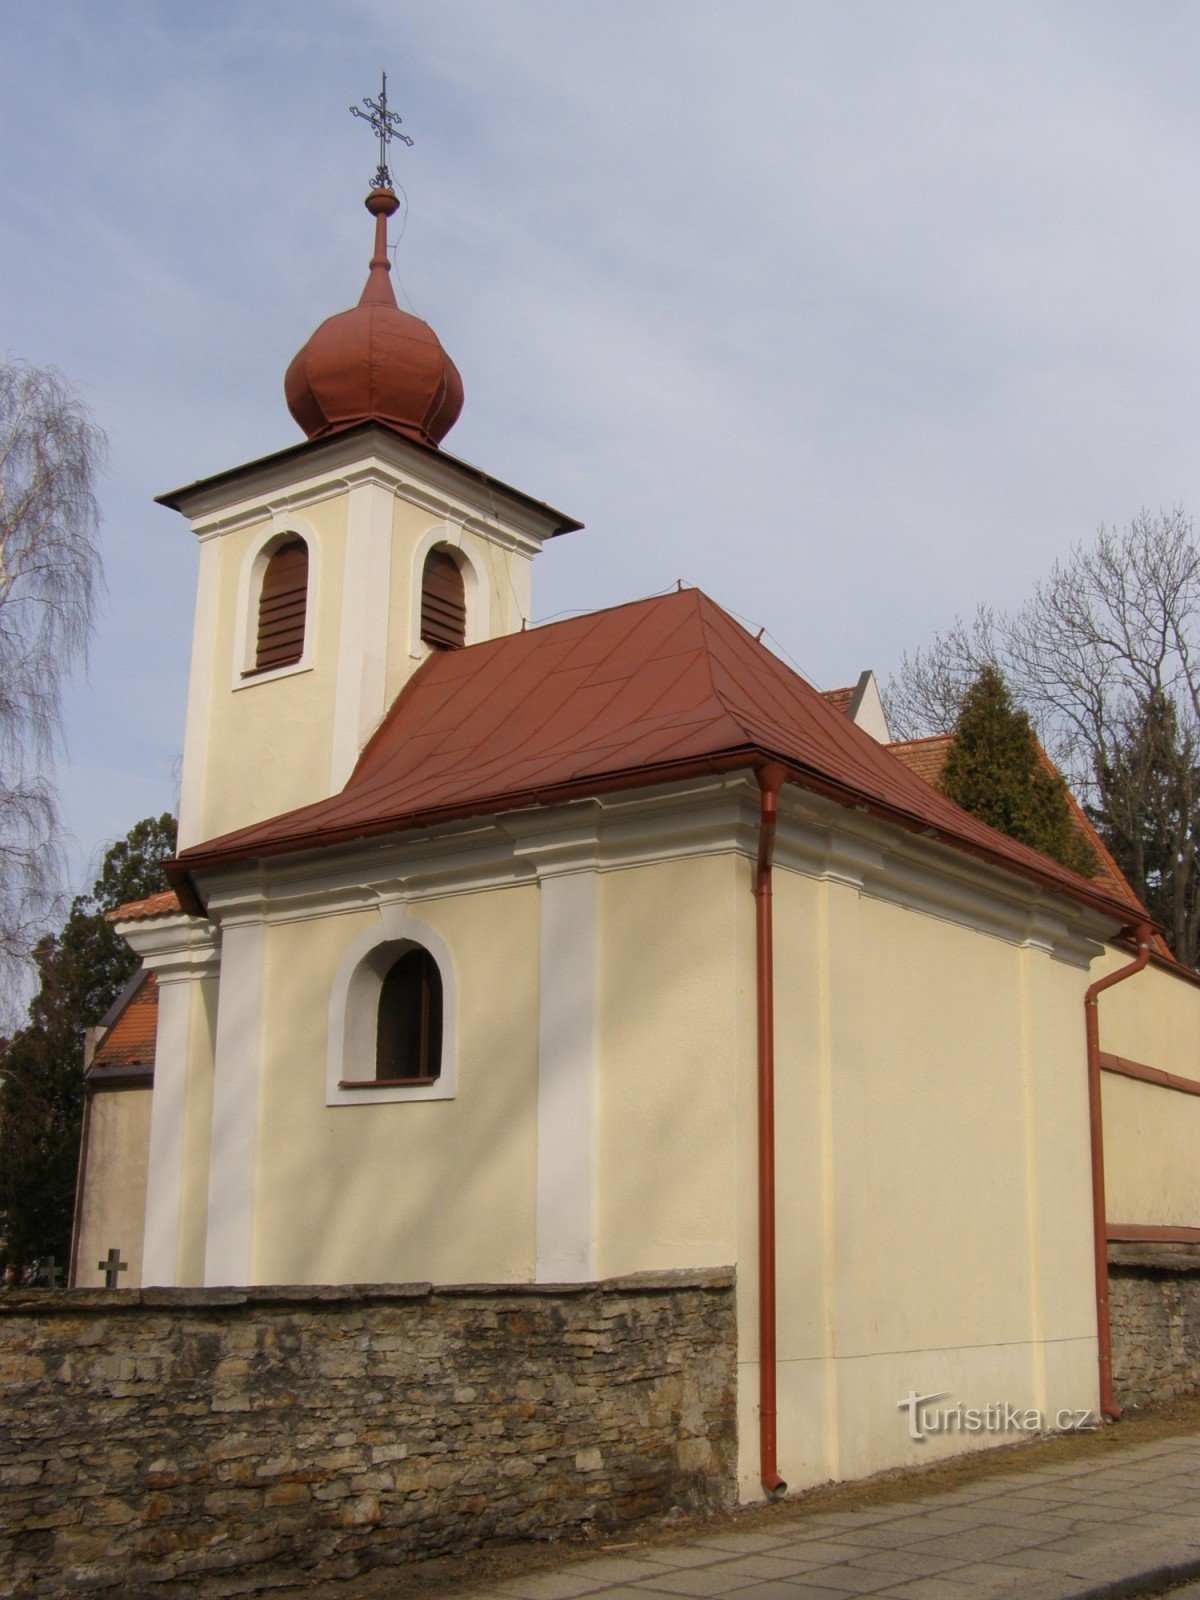 Nové Město nad Metují - Church of All Saints